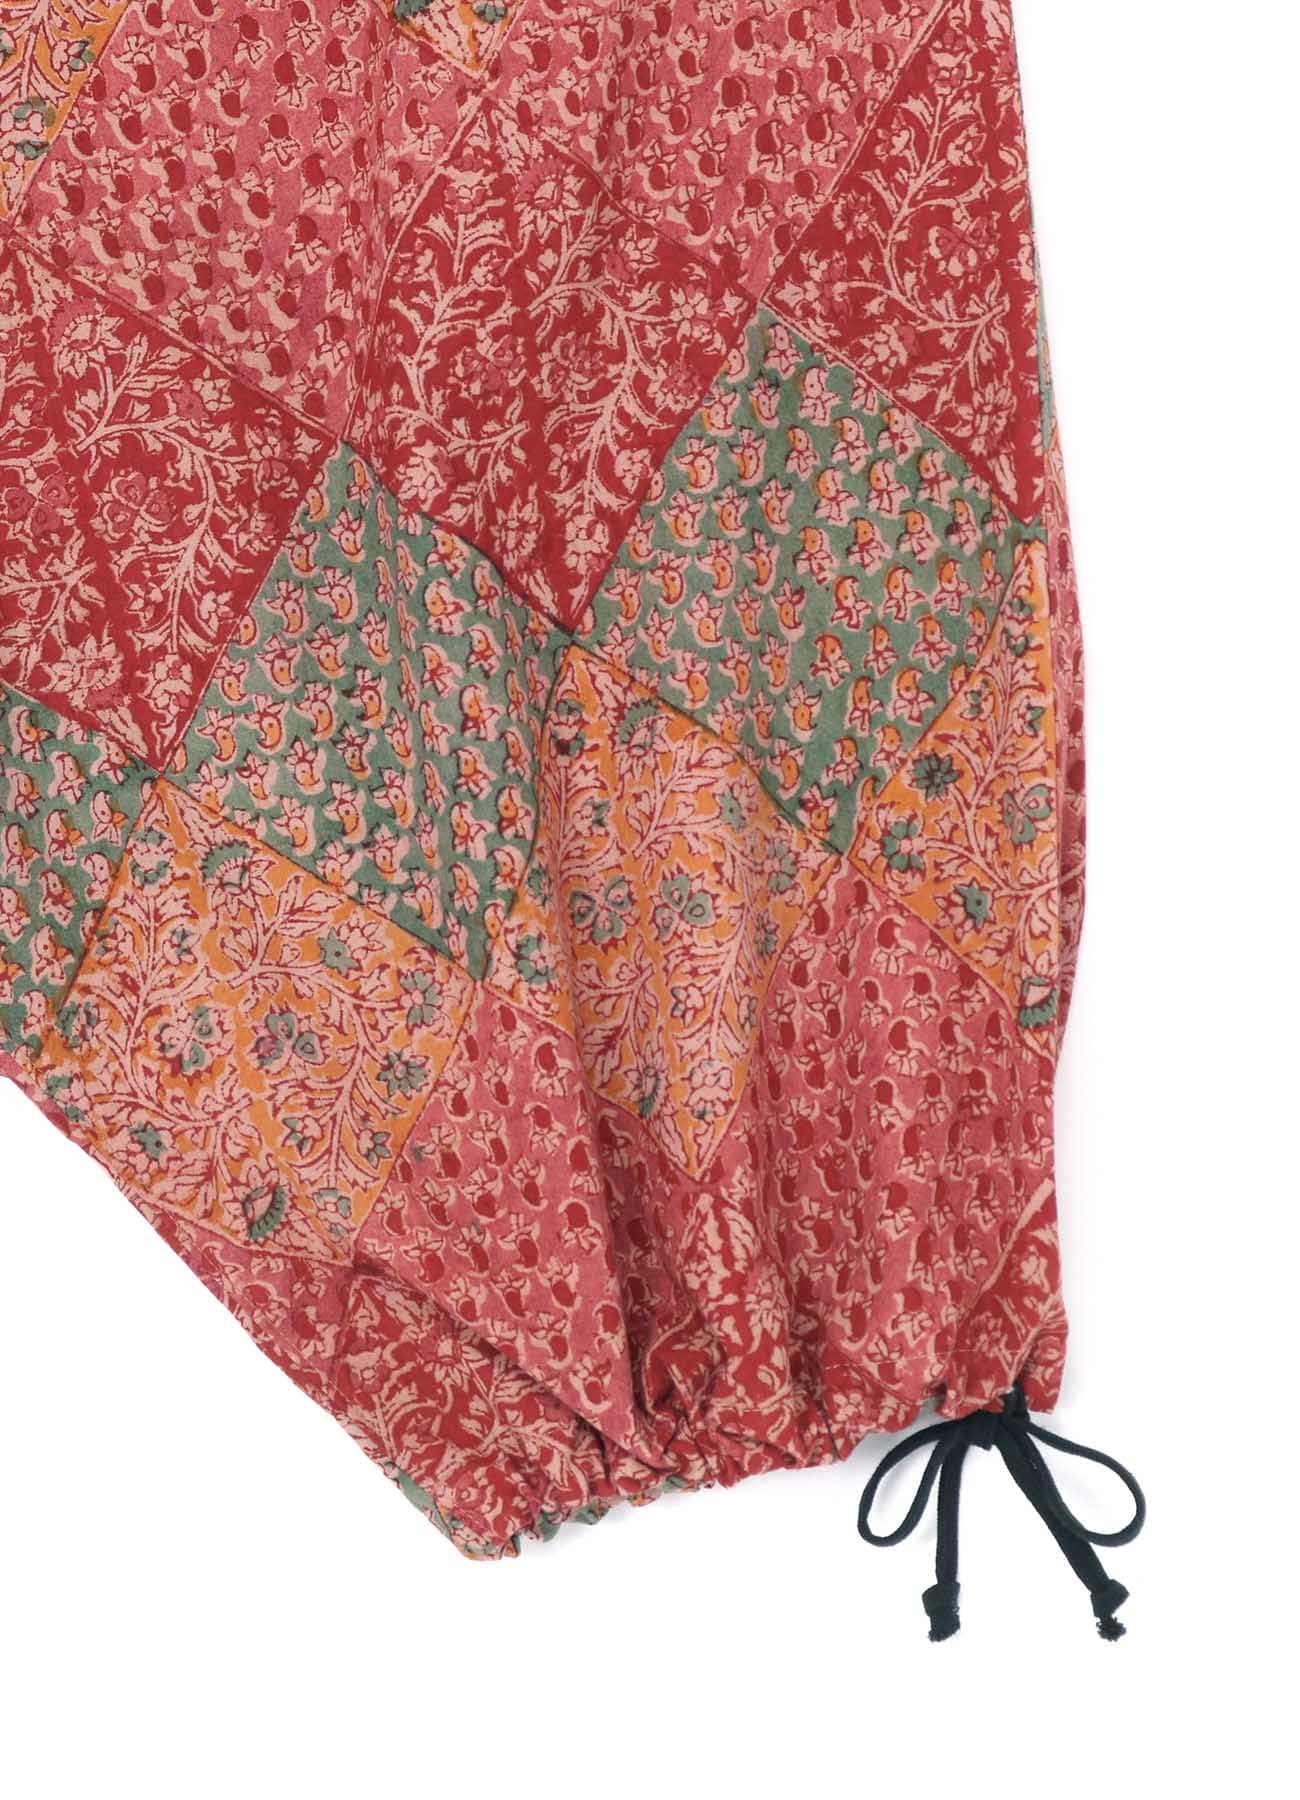 INDIAN BLOCK PRINTED BOTANICAL PATTERN BALLOON SARUEL PANTS